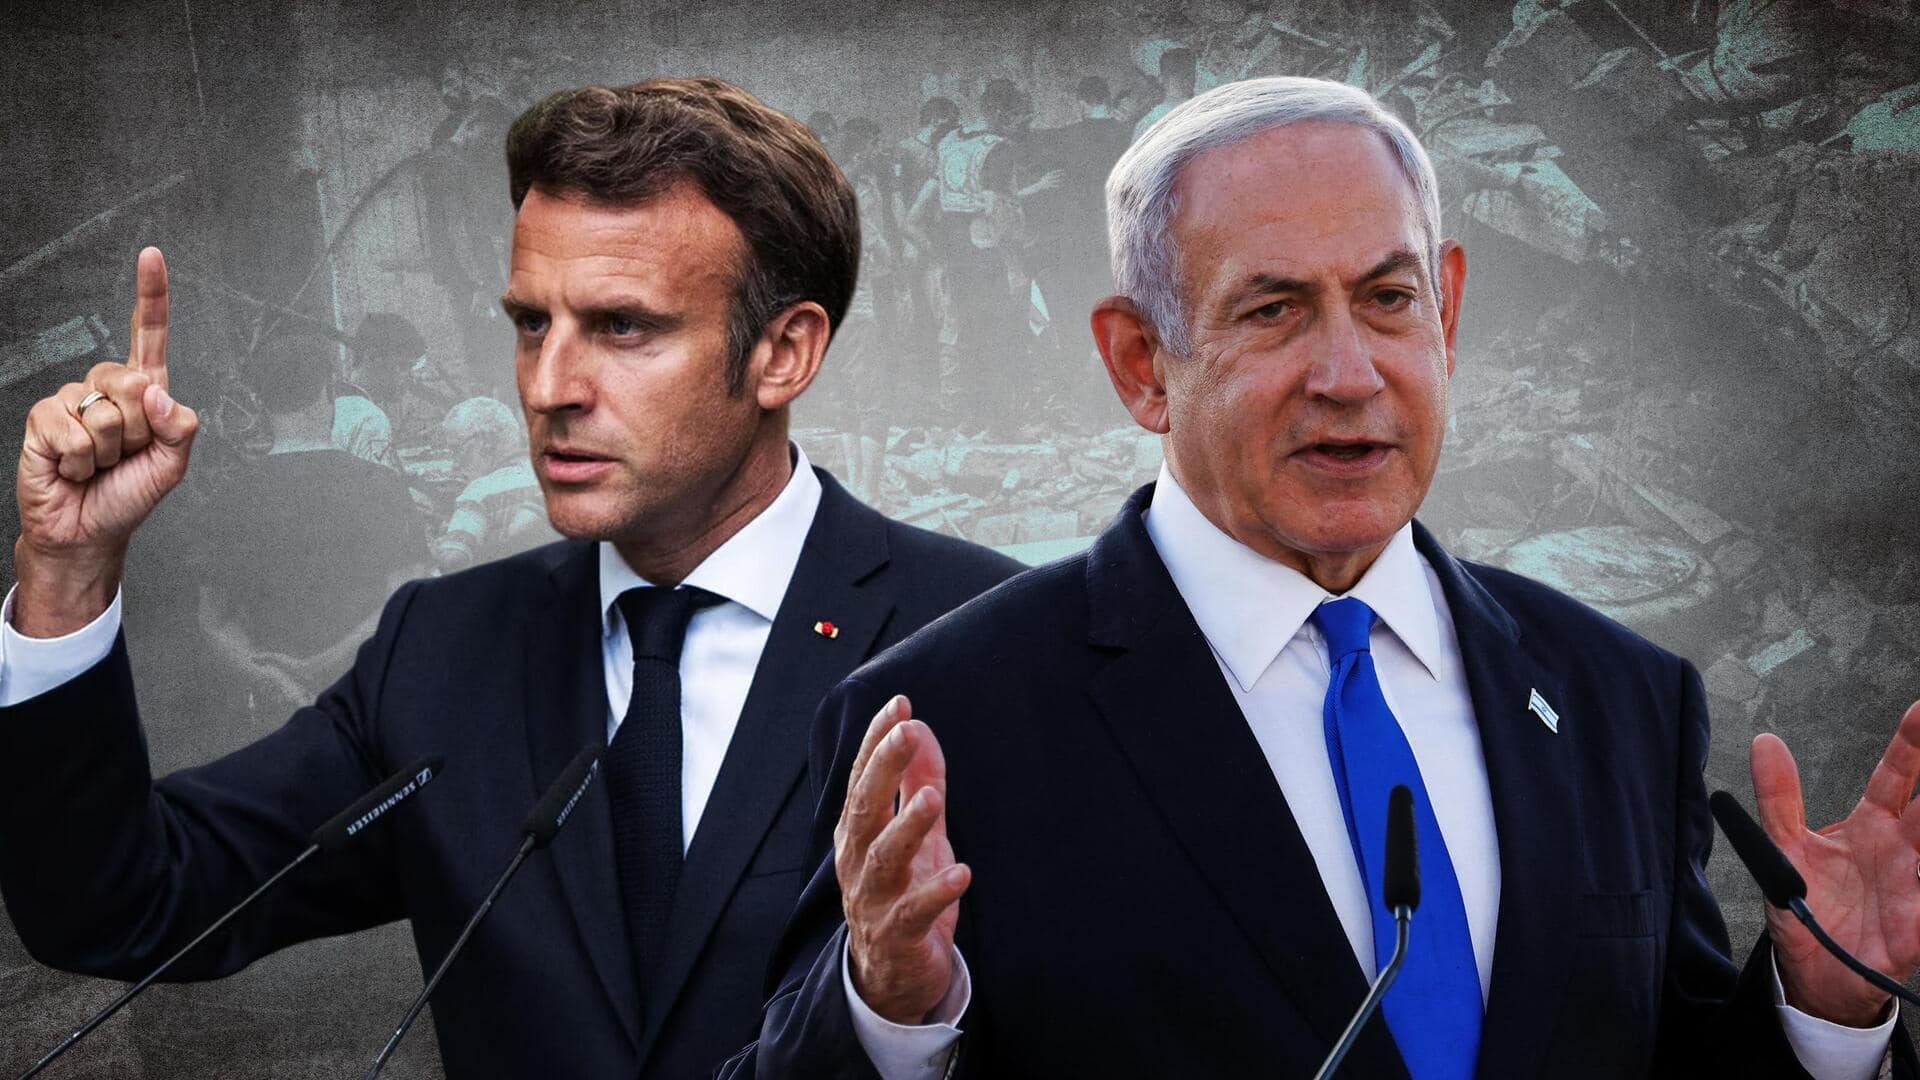 इजरायल-हमास युद्ध: फ्रांस के राष्ट्रपति मैक्रों ने किया युद्धविराम का आह्वान, नेतन्याहू ने दी ये प्रतिक्रिया